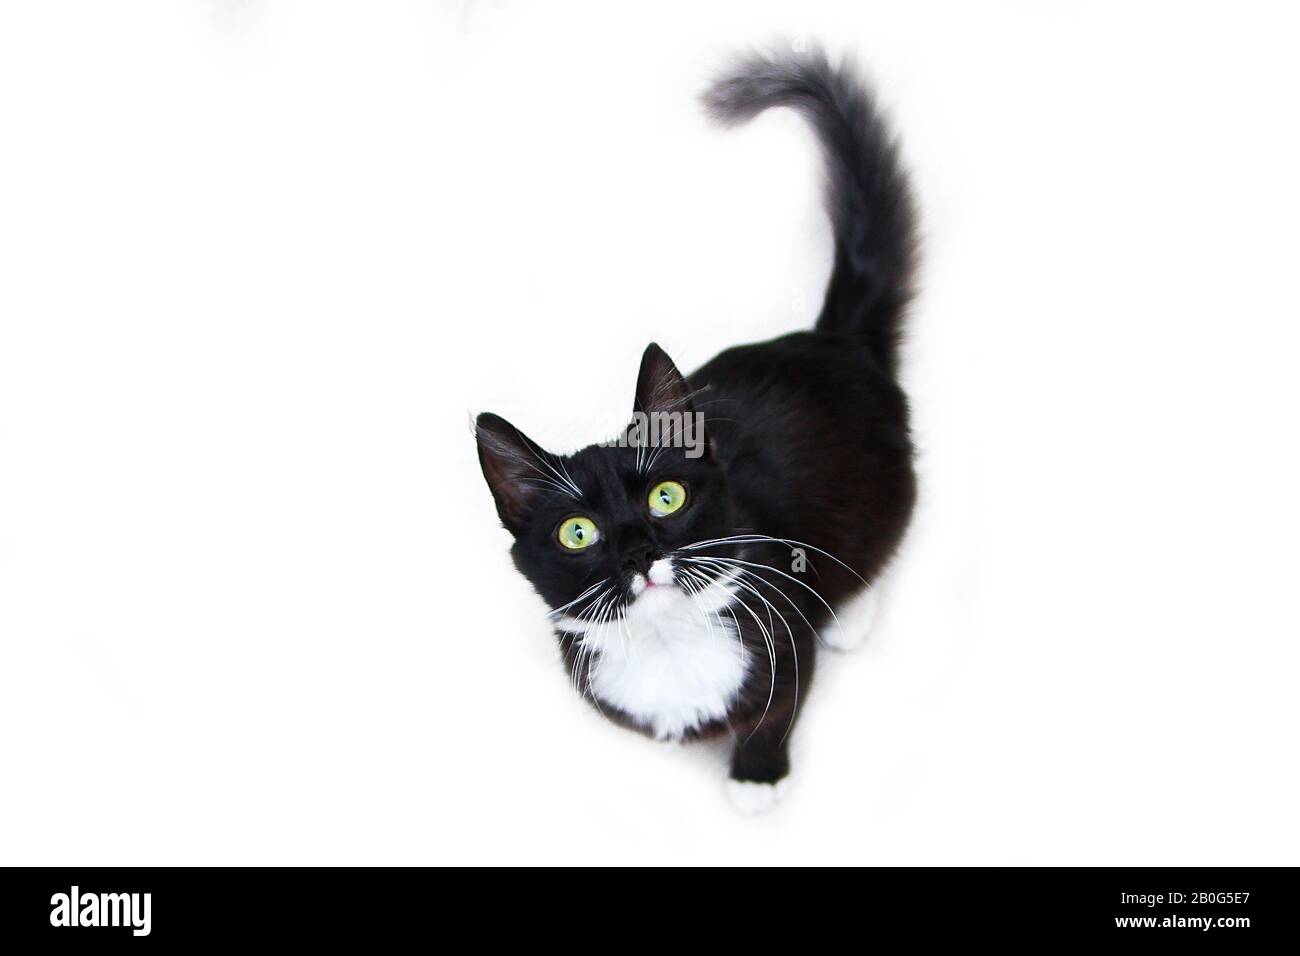 Die süße schwarze Katze mit grünen Augen auf weißem Hintergrund, die neugierig aufblickt. Süß und glücklich aussehen. Stockfoto